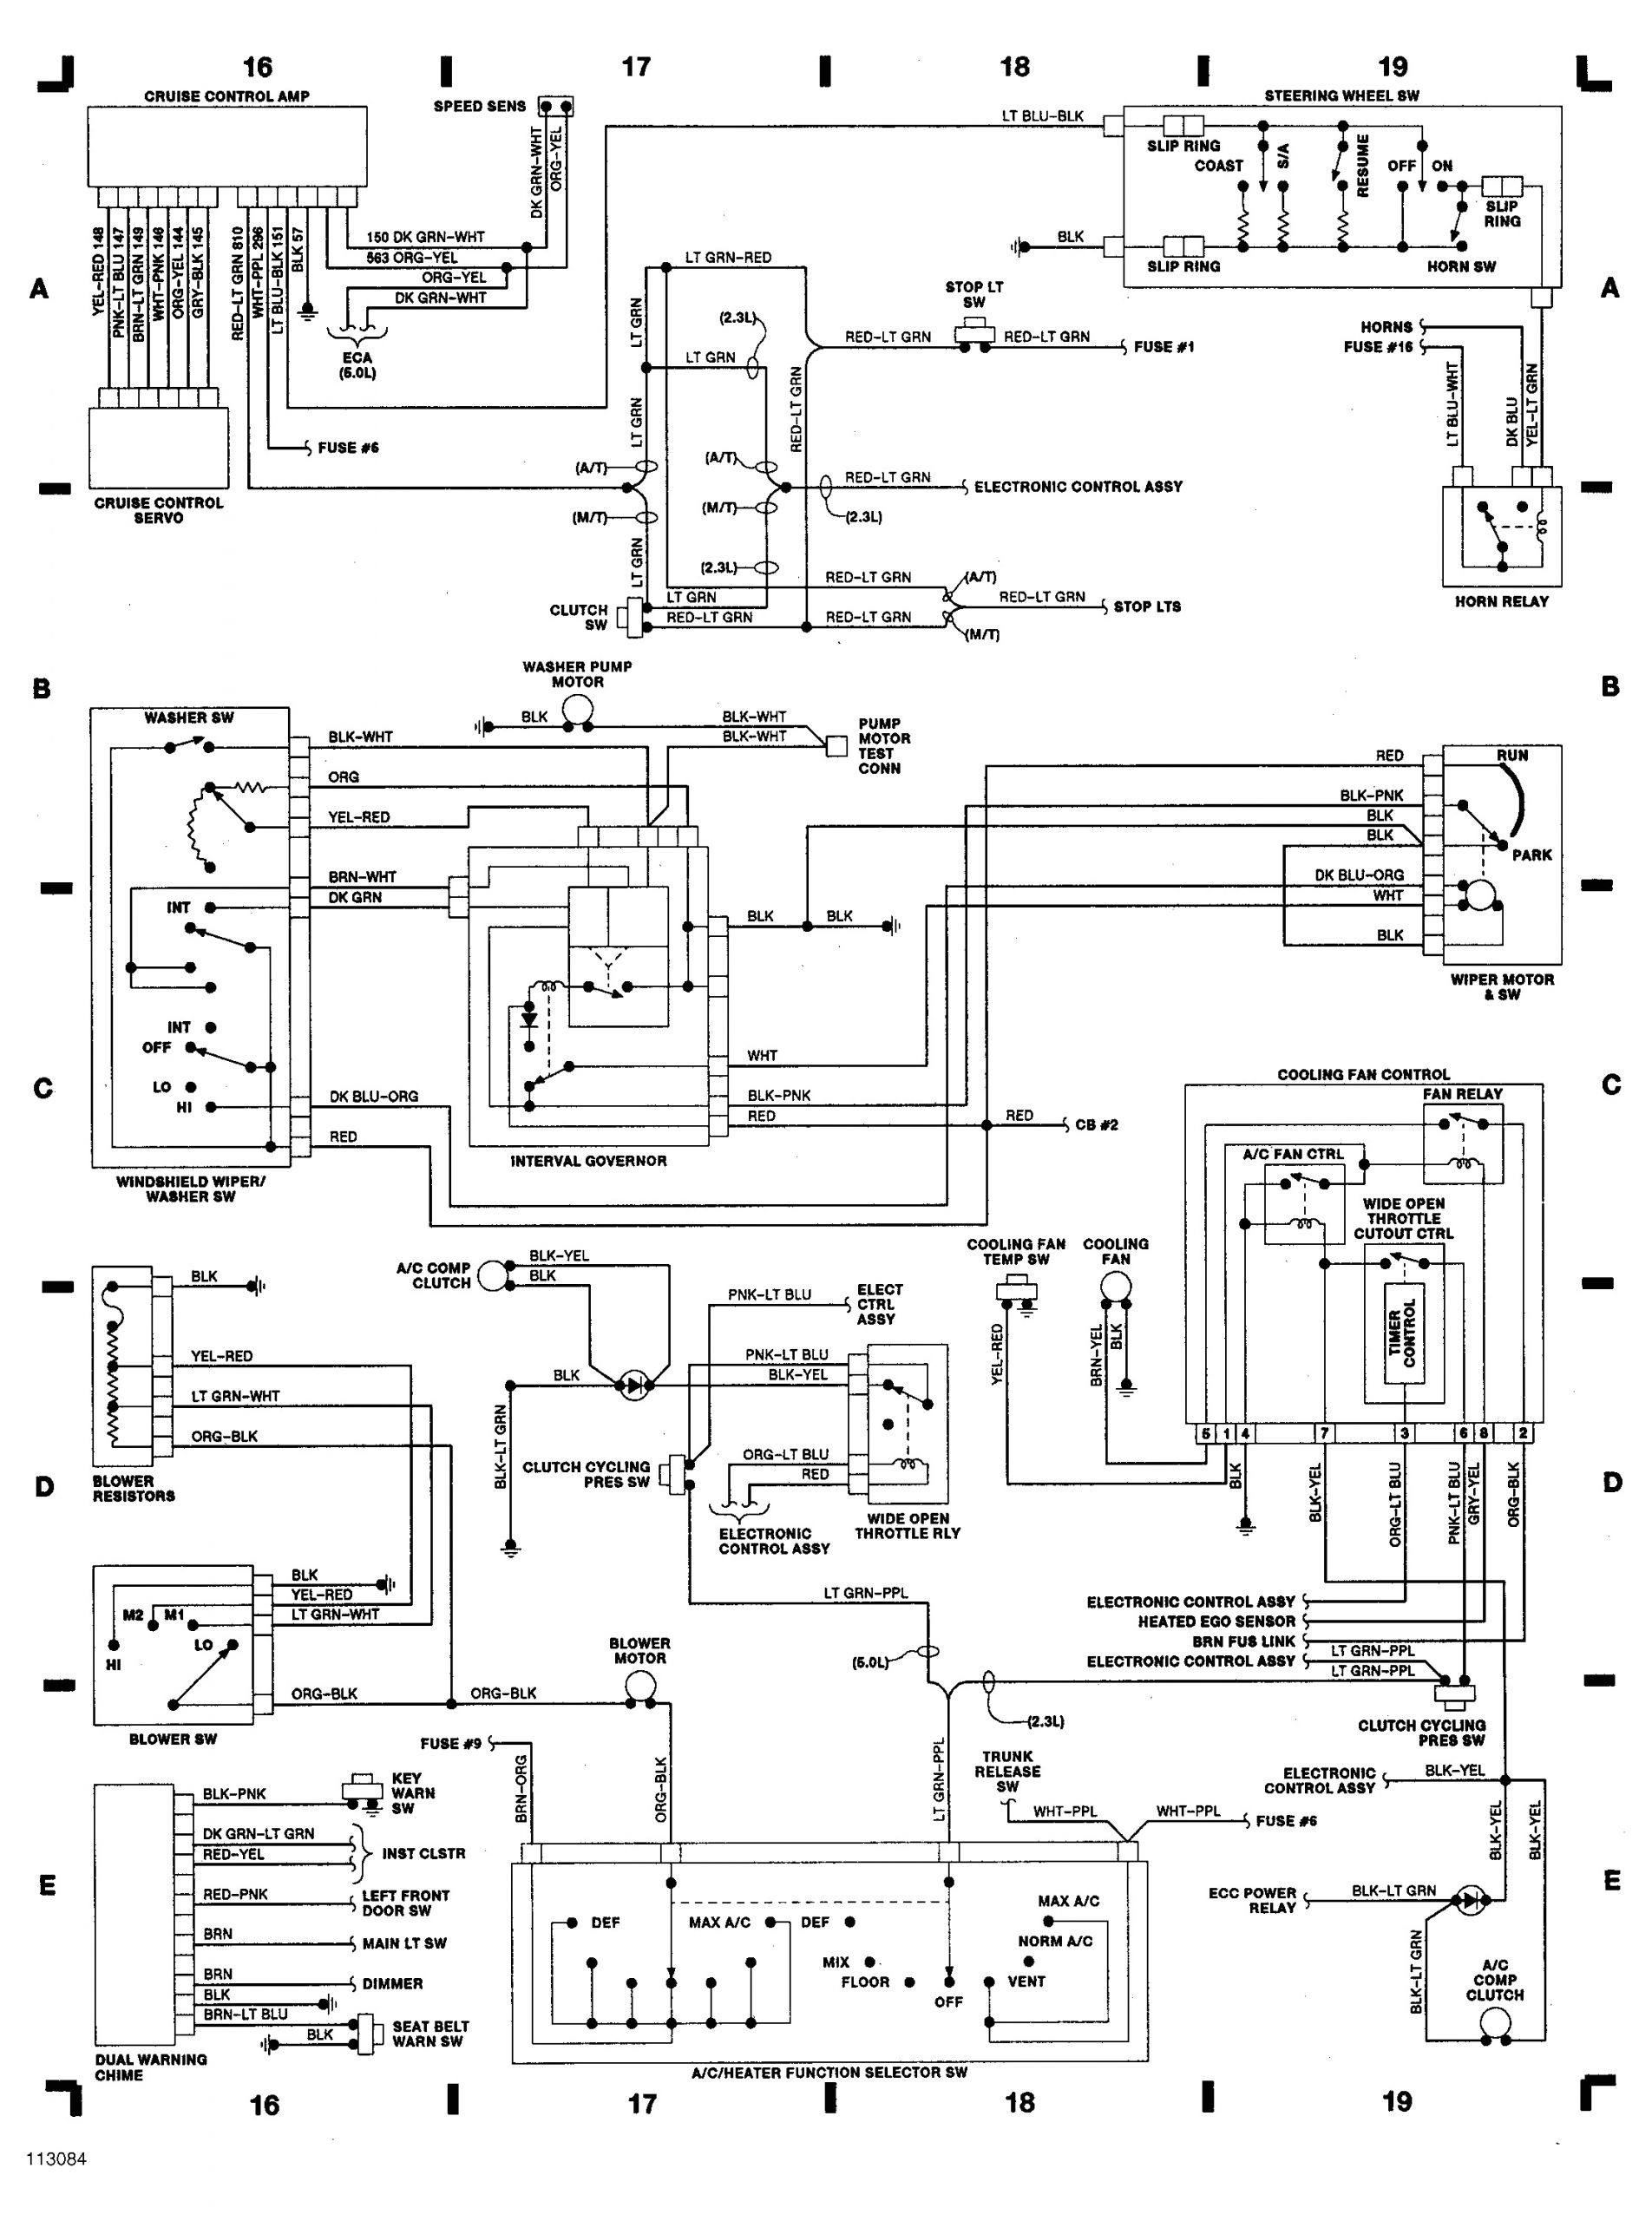 1990 mustang wiring diagram ford mustang wiring diagrams further 1995 ford mustang wiring of 1990 mustang wiring diagram gif